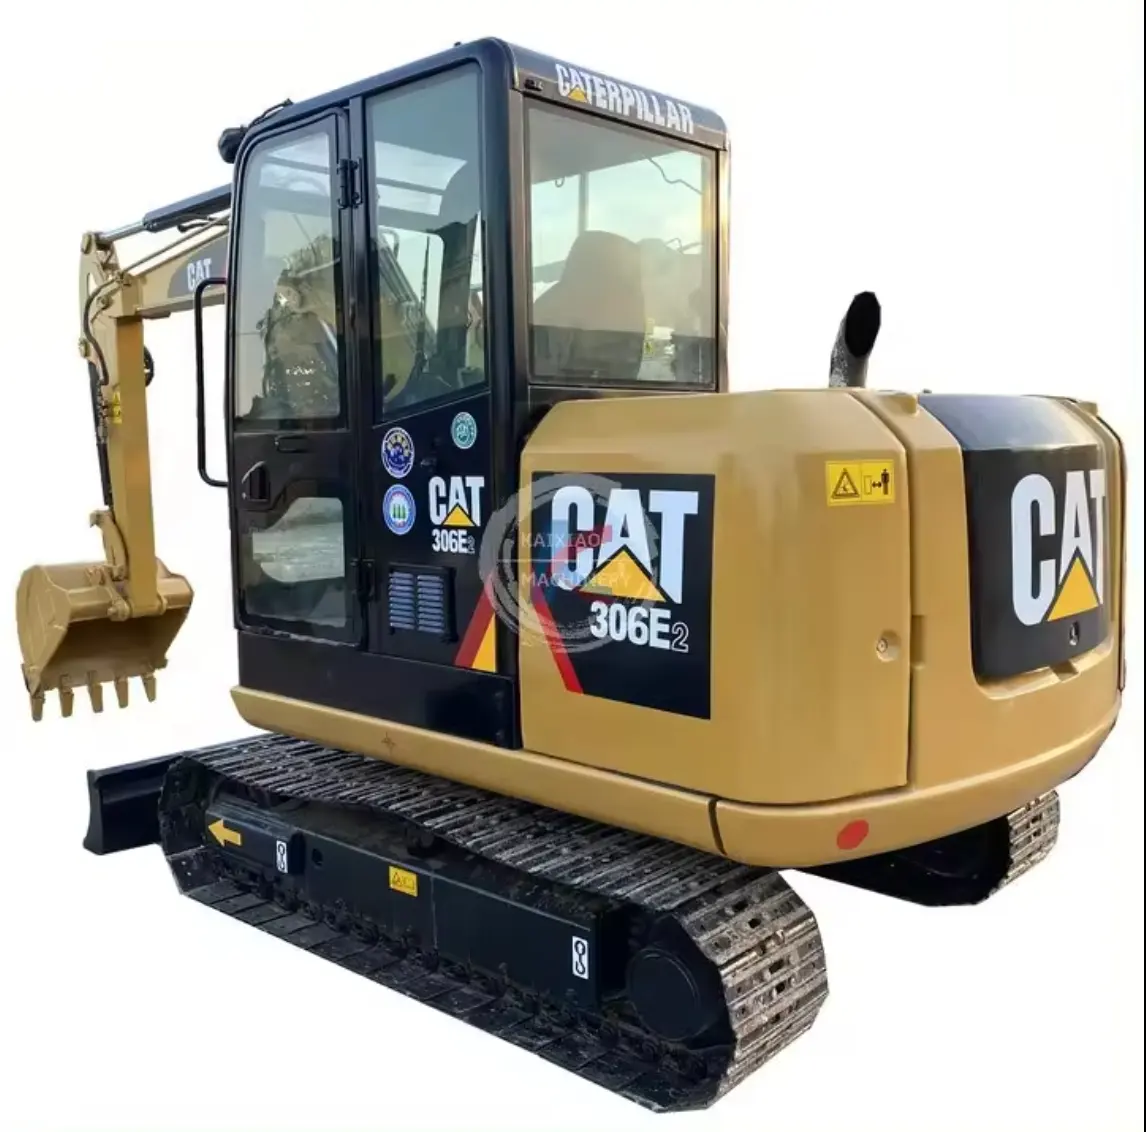 Precio bajo Usado Cat Caterpillar Mini Excavadora 6 Ton Cat Cat306E2 Hidráulico Sobre Orugas Usado Excavadora